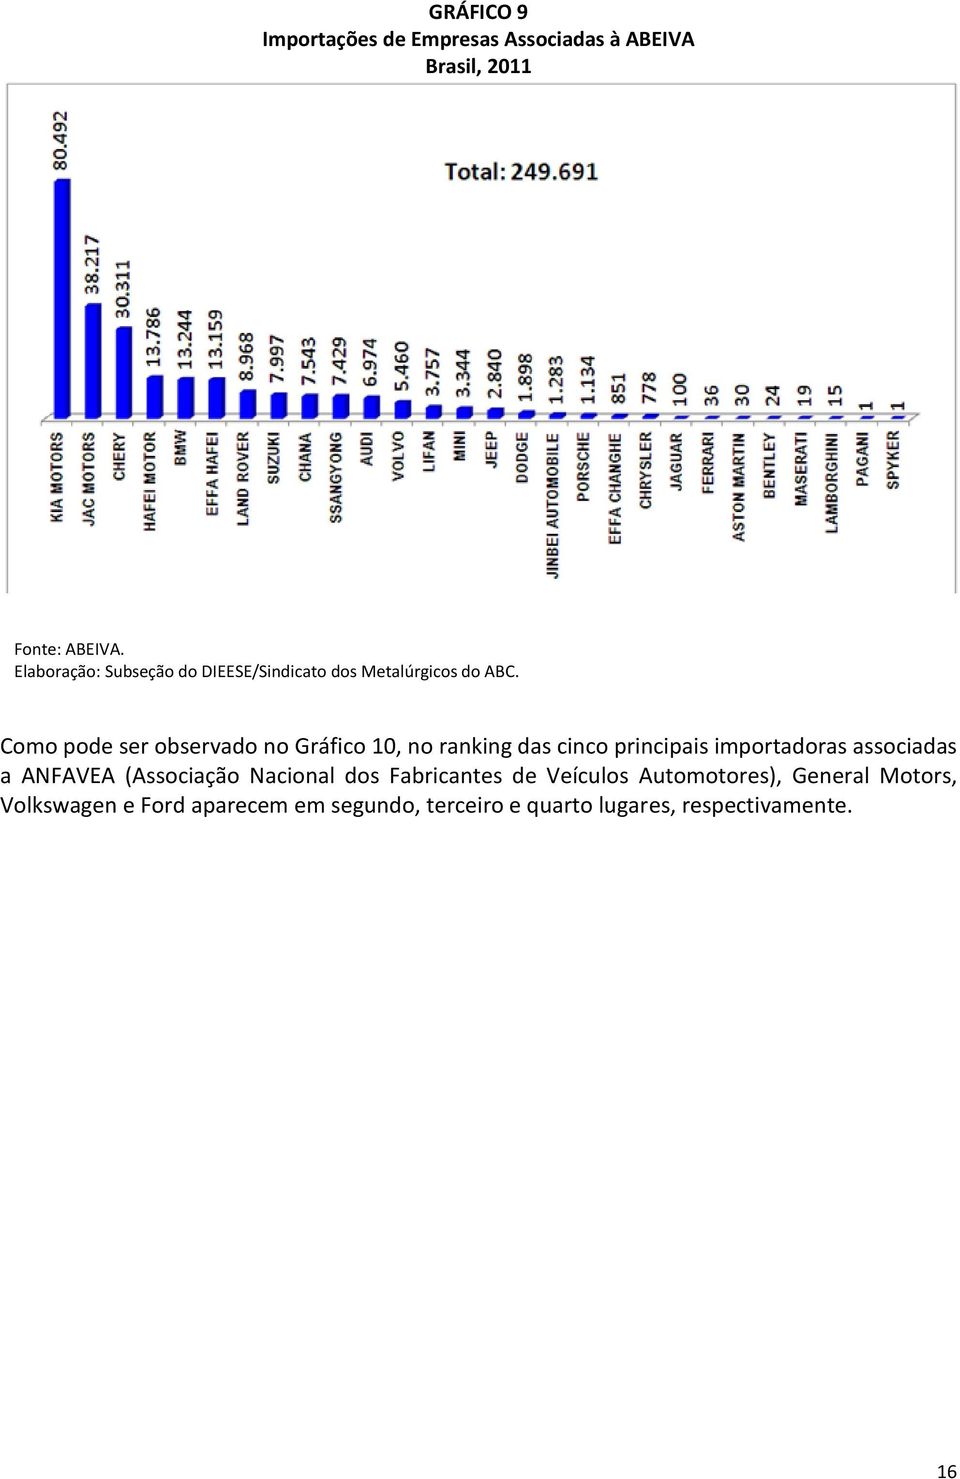 Como pode ser observado no Gráfico 10, no ranking das cinco principais importadoras associadas a ANFAVEA